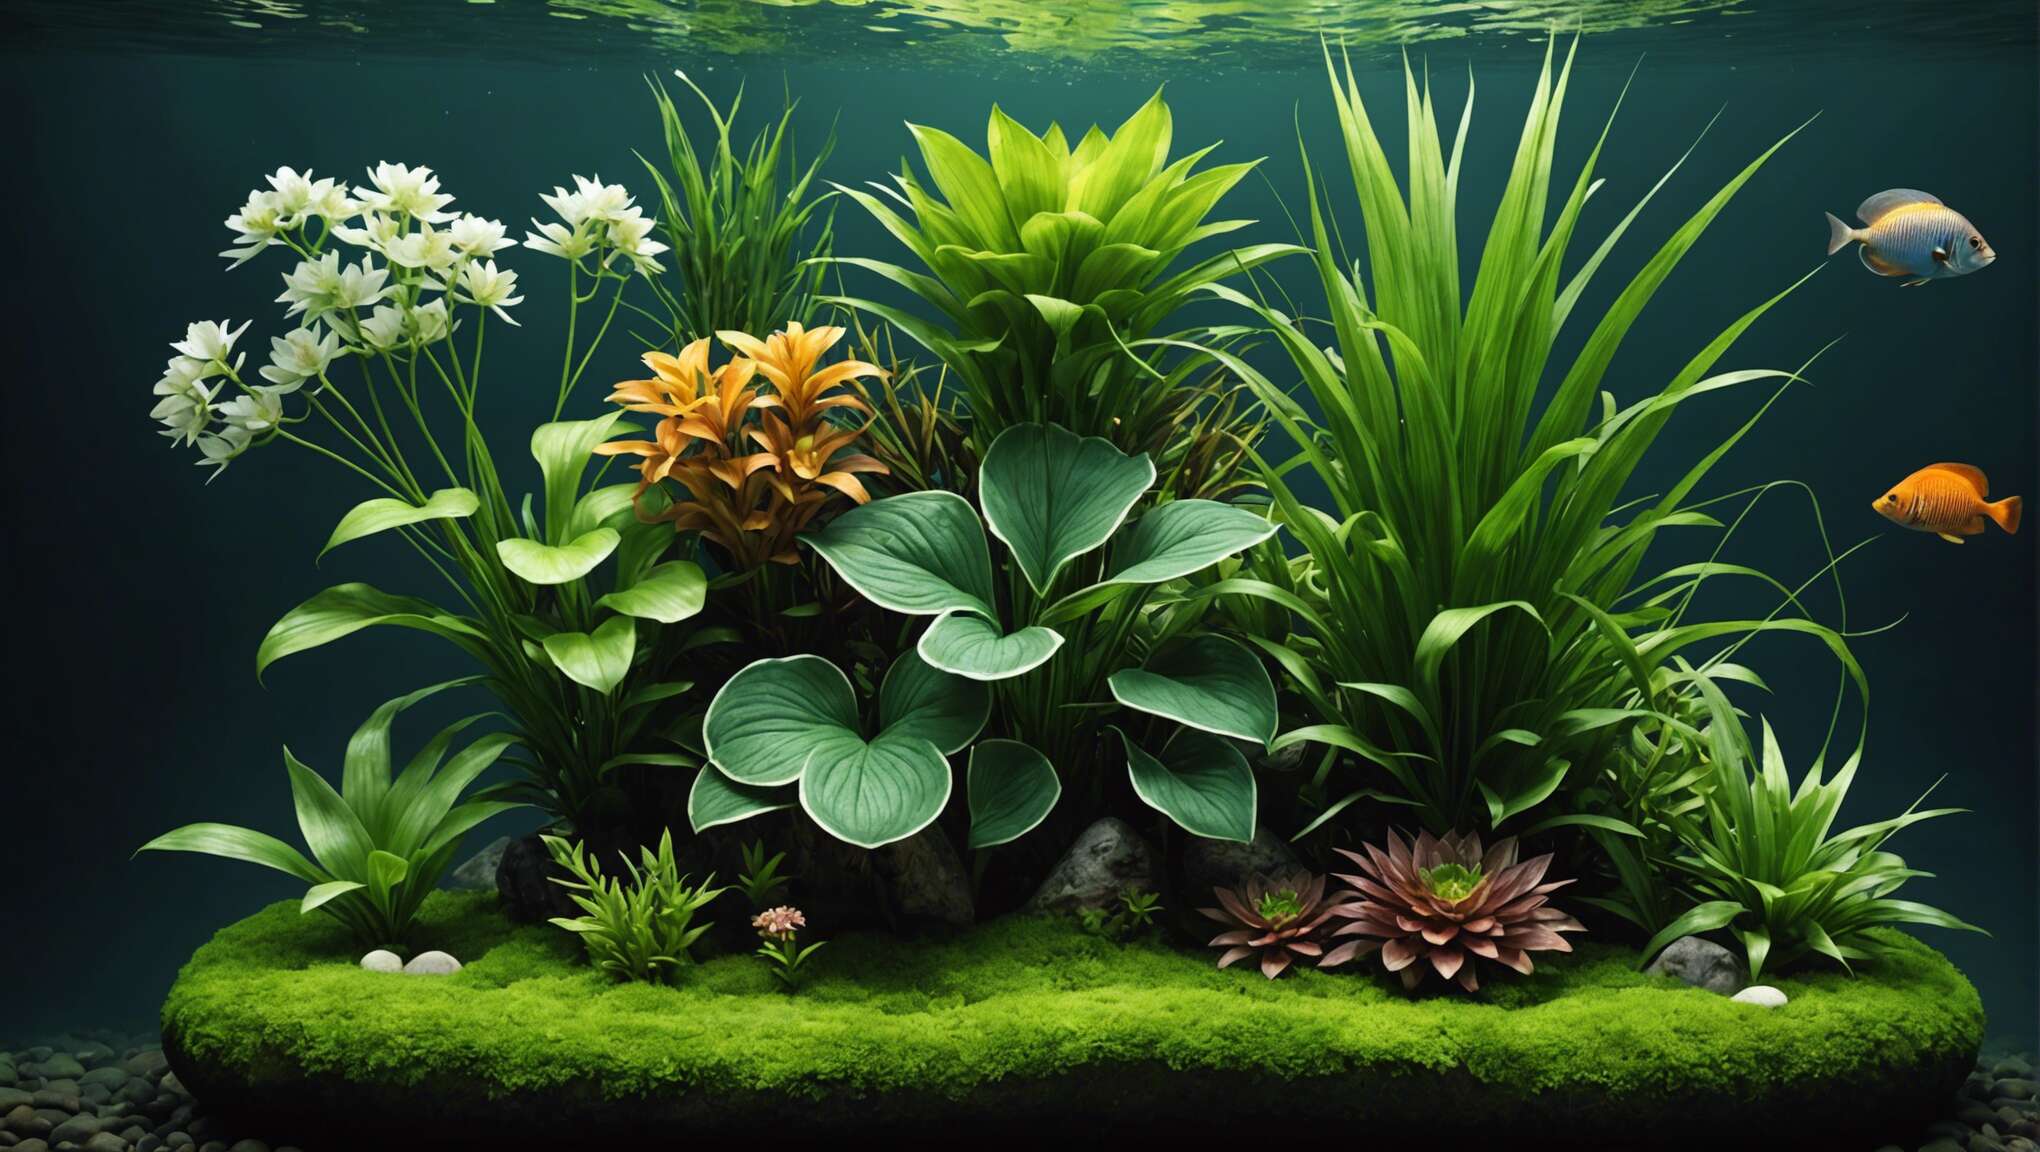 Sélection et arrangement des plantes aquatiques pour scènes sublimes